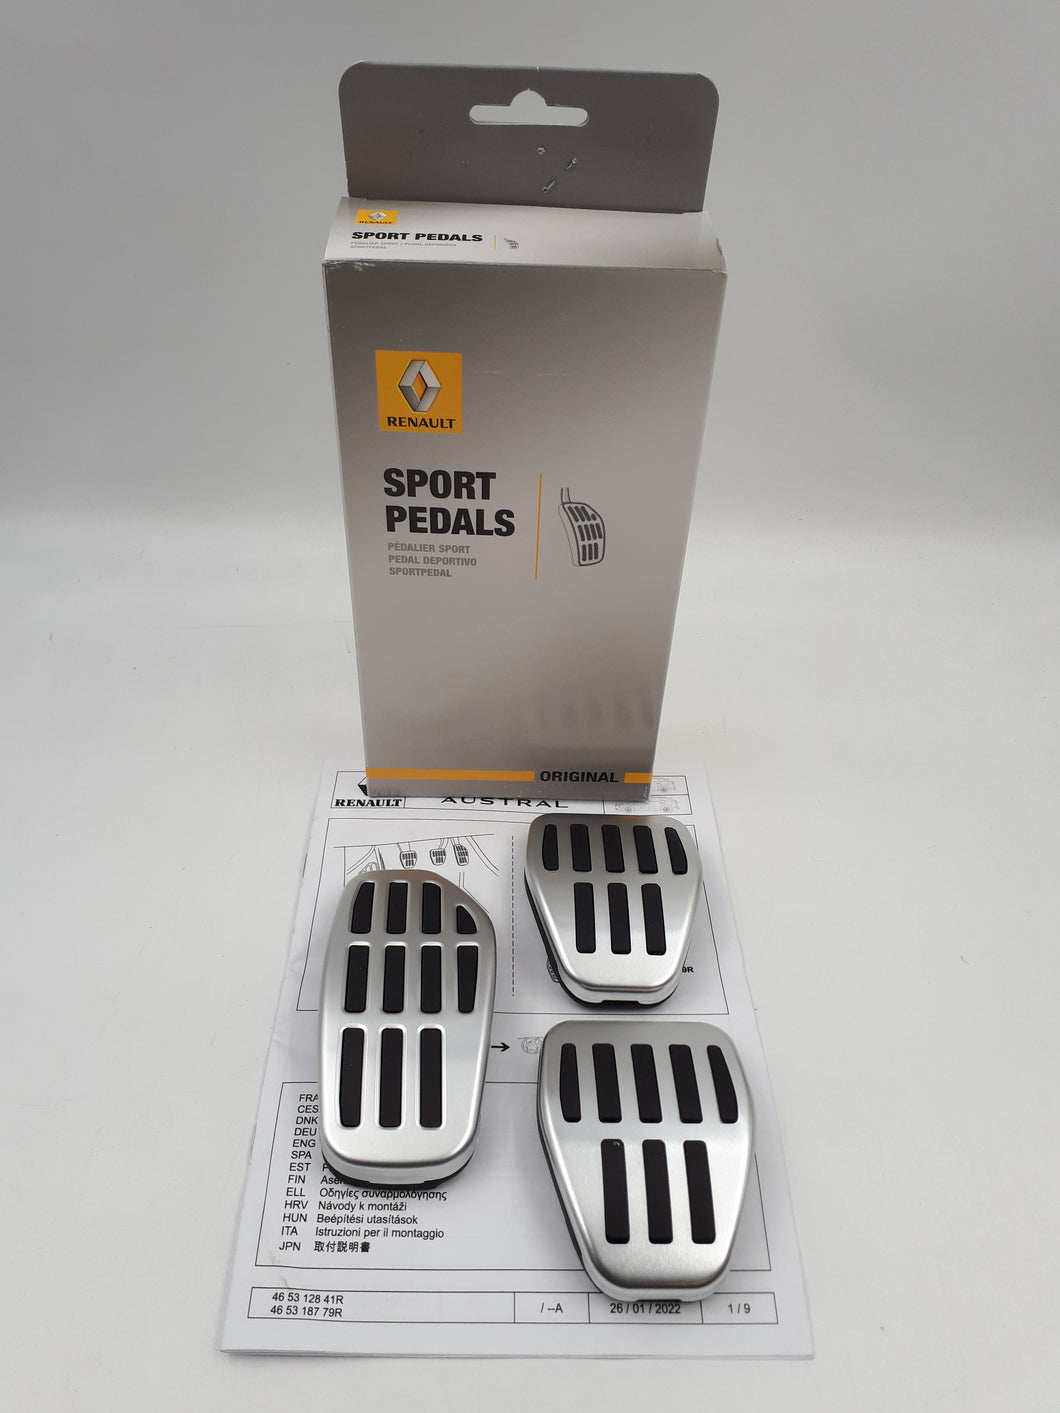 Juego de 3 pedales deportivos manuales Renault AUSTRAL ORIGINALES 465312841R